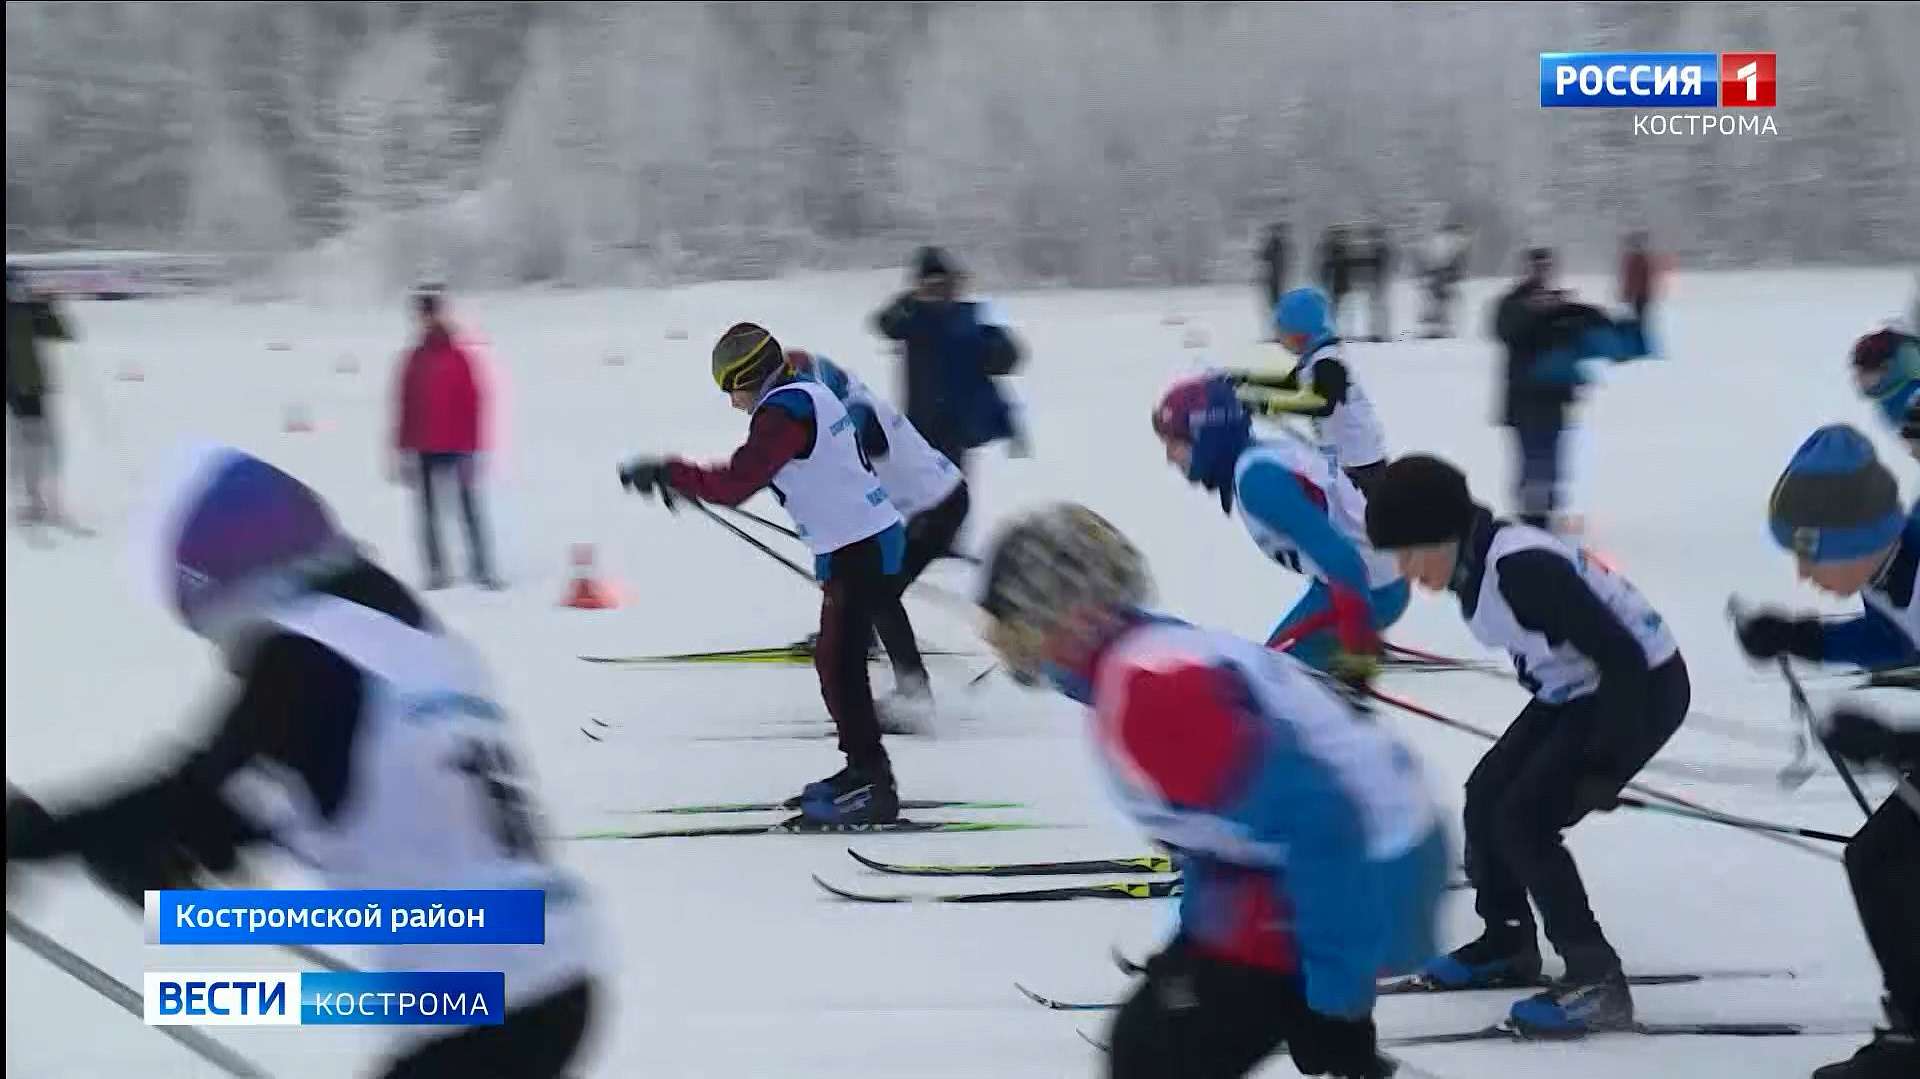 Под Костромой состоялась новогодняя лыжная гонка